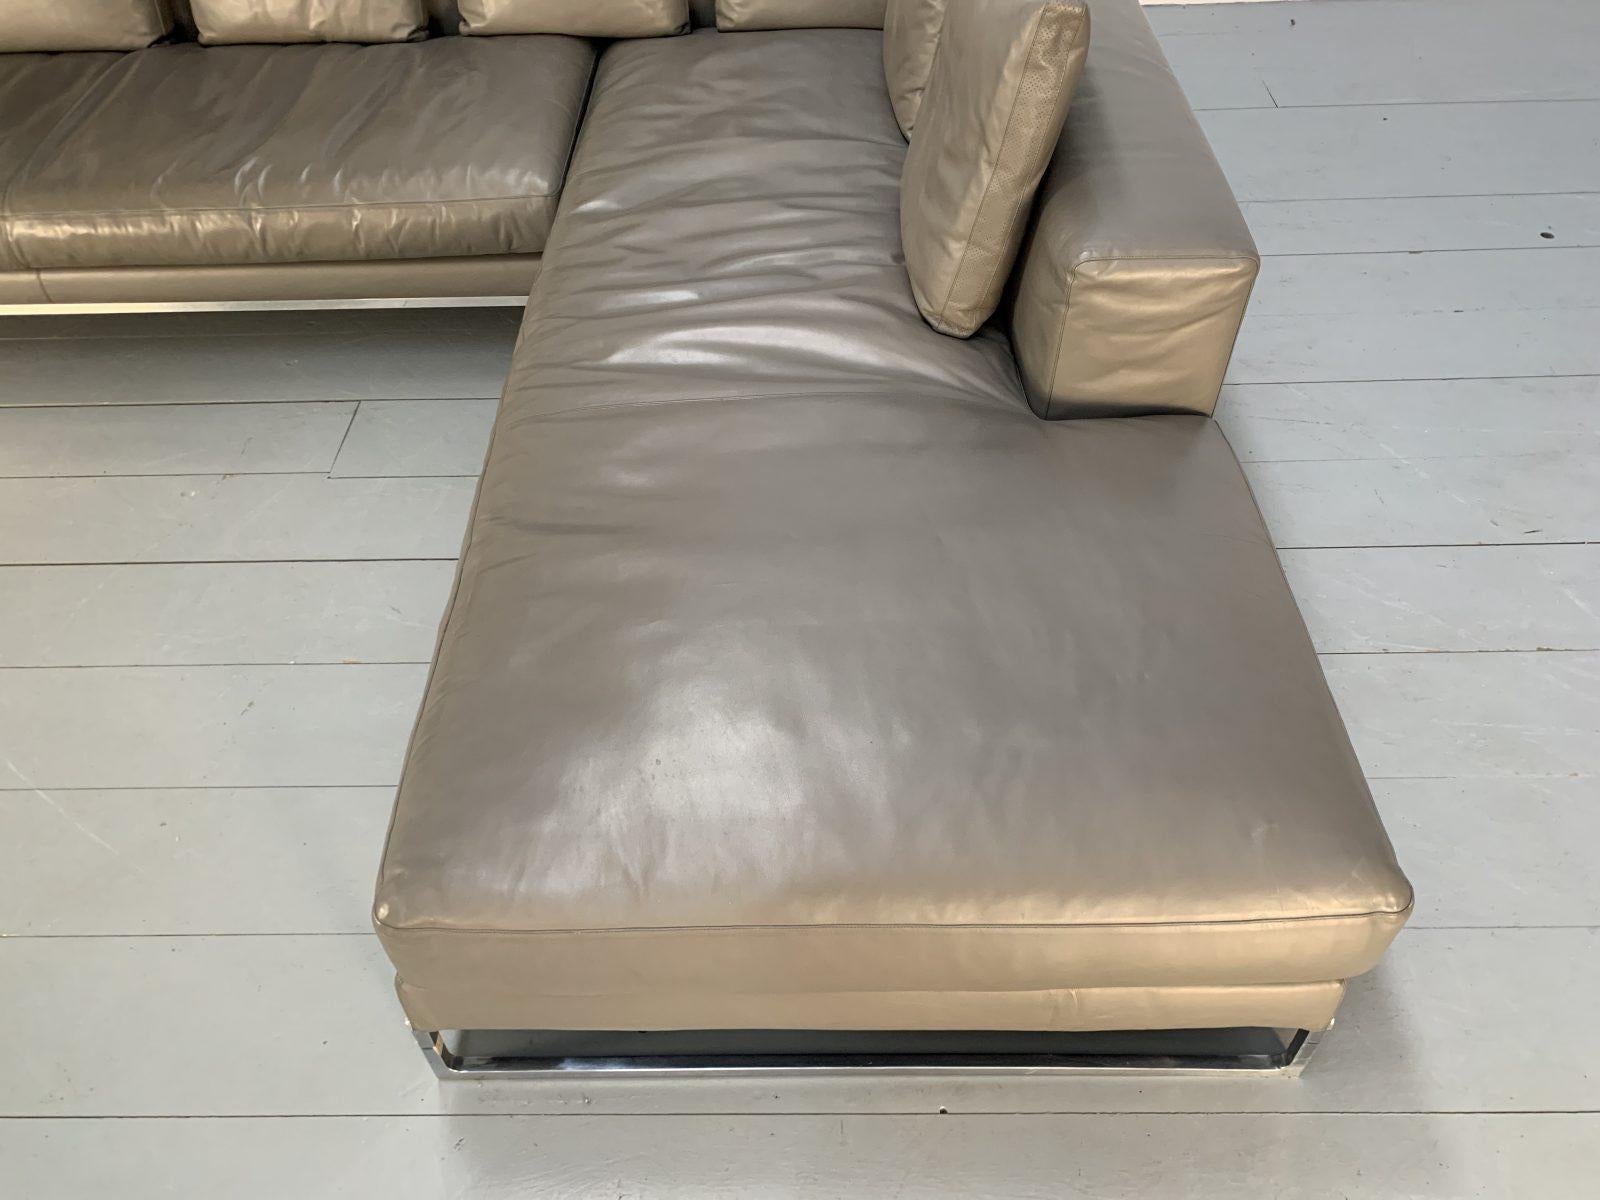 Superb B&B Italia “Dadone” L-Shape Sofa in Mid-Grey “Gamma” Leather In Good Condition For Sale In Barrowford, GB